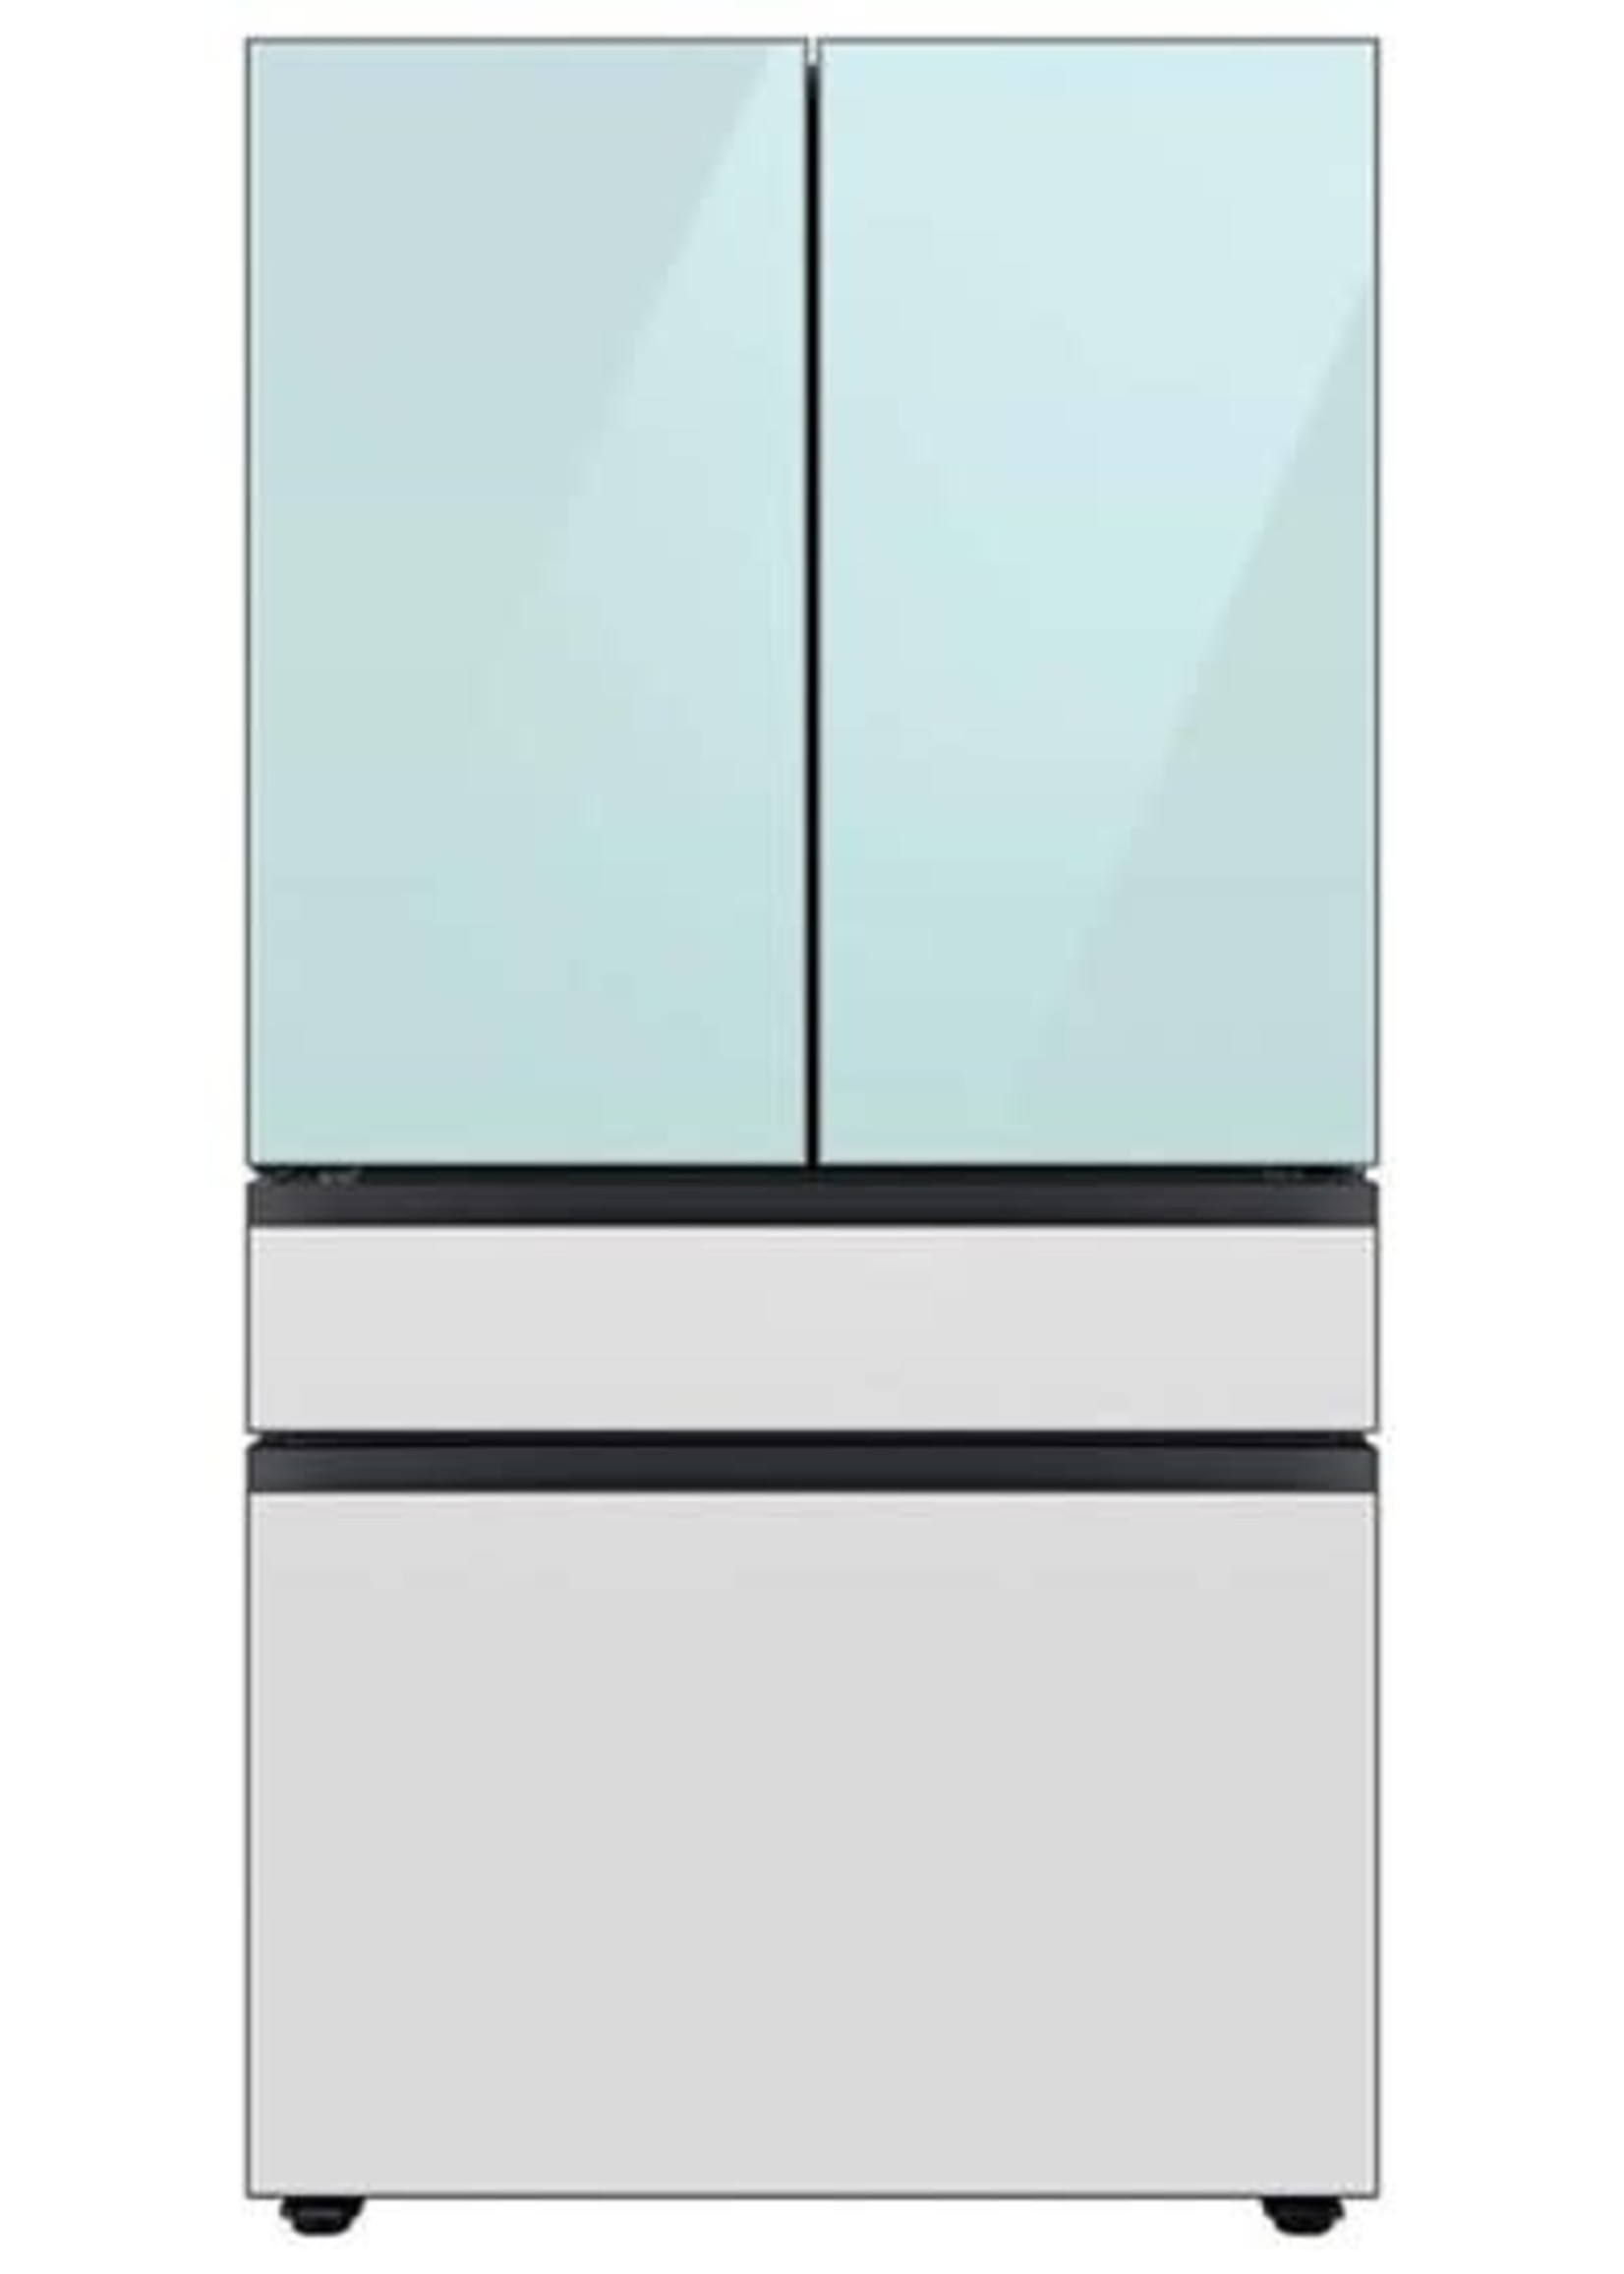 Samsung *Samsung RF23BB86004M  Bespoke 22.8-cu ft 4-Door Counter-depth French Door Refrigerator with Dual Ice Maker and Door within Door ENERGY STAR